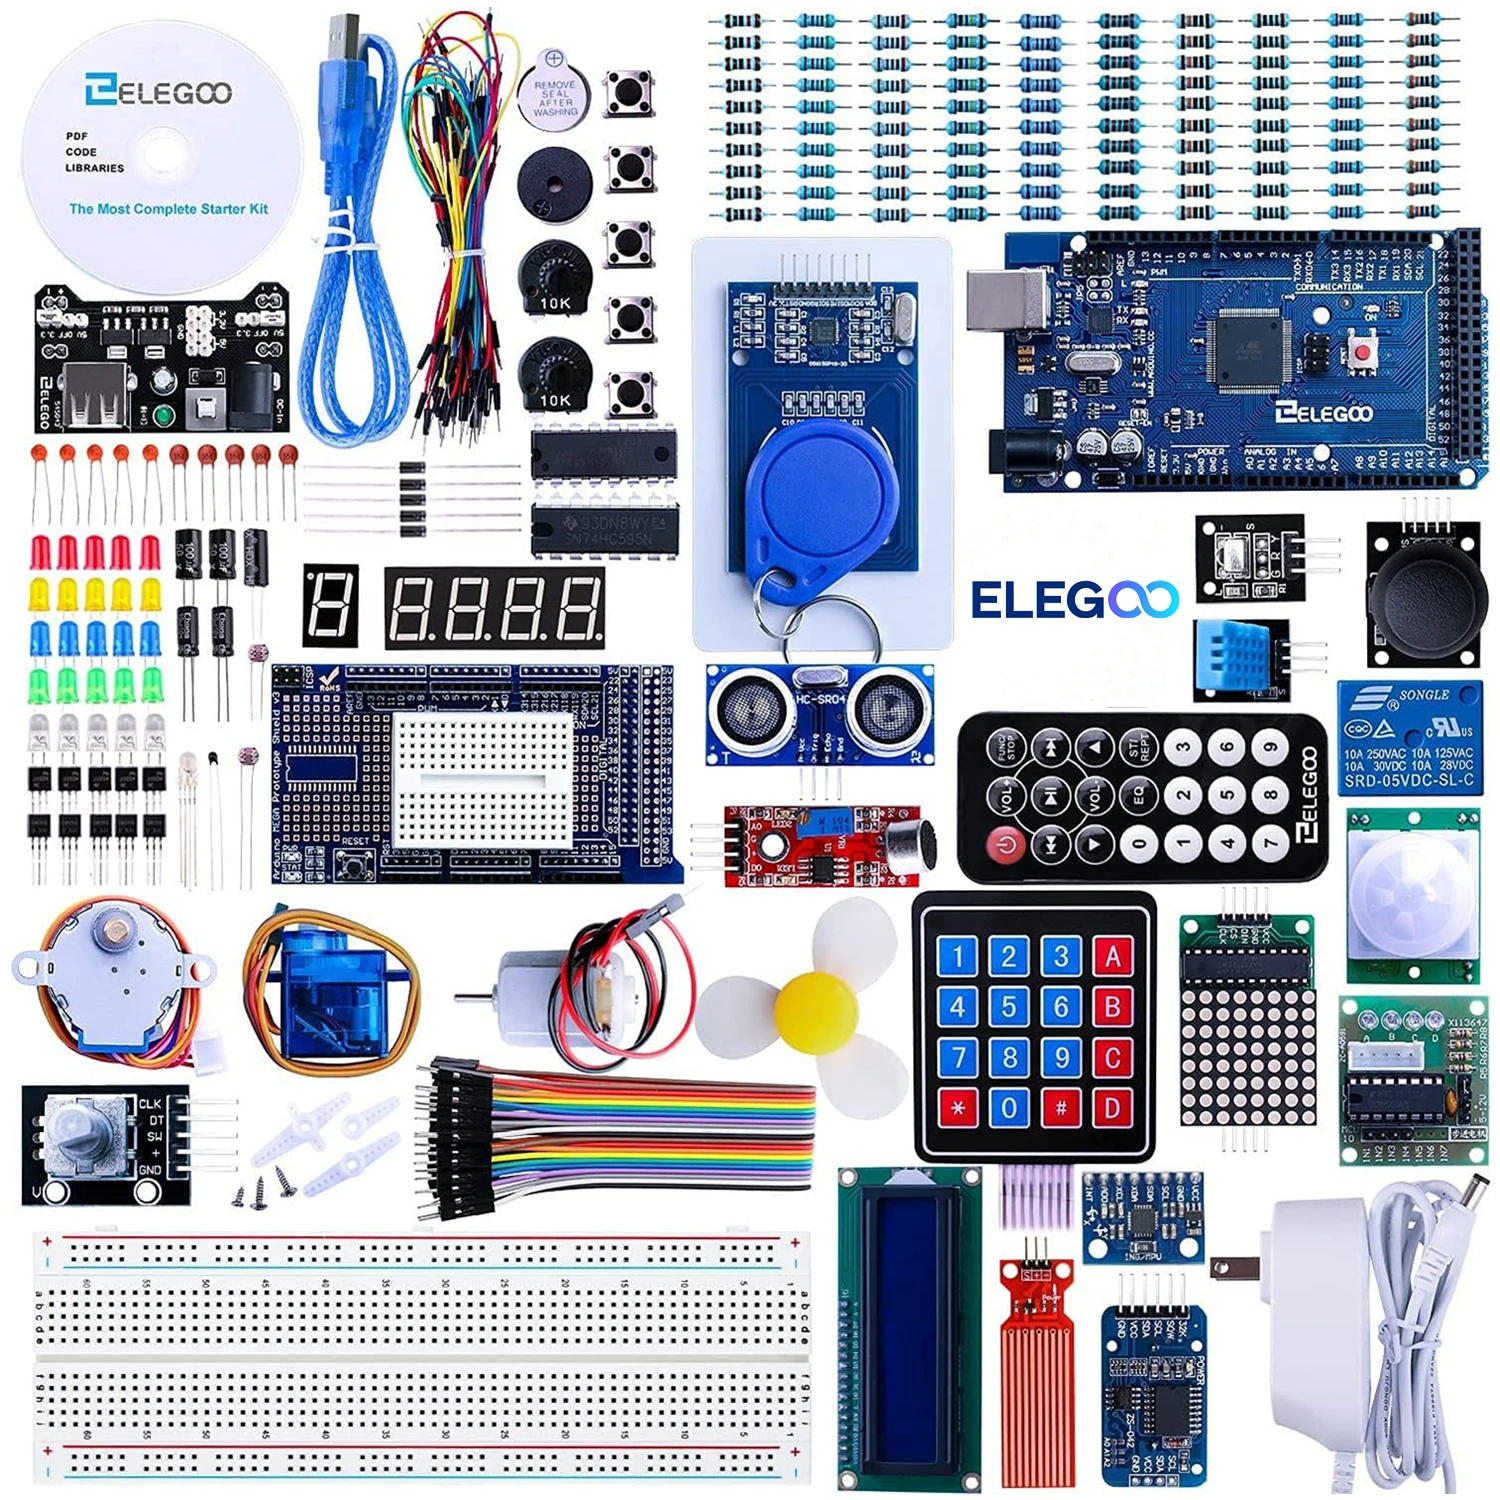 

ELEGOO Arduino Mega R3 Project самый полный набор для начинающих с обучающим руководством, совместимым с Arduino IDE